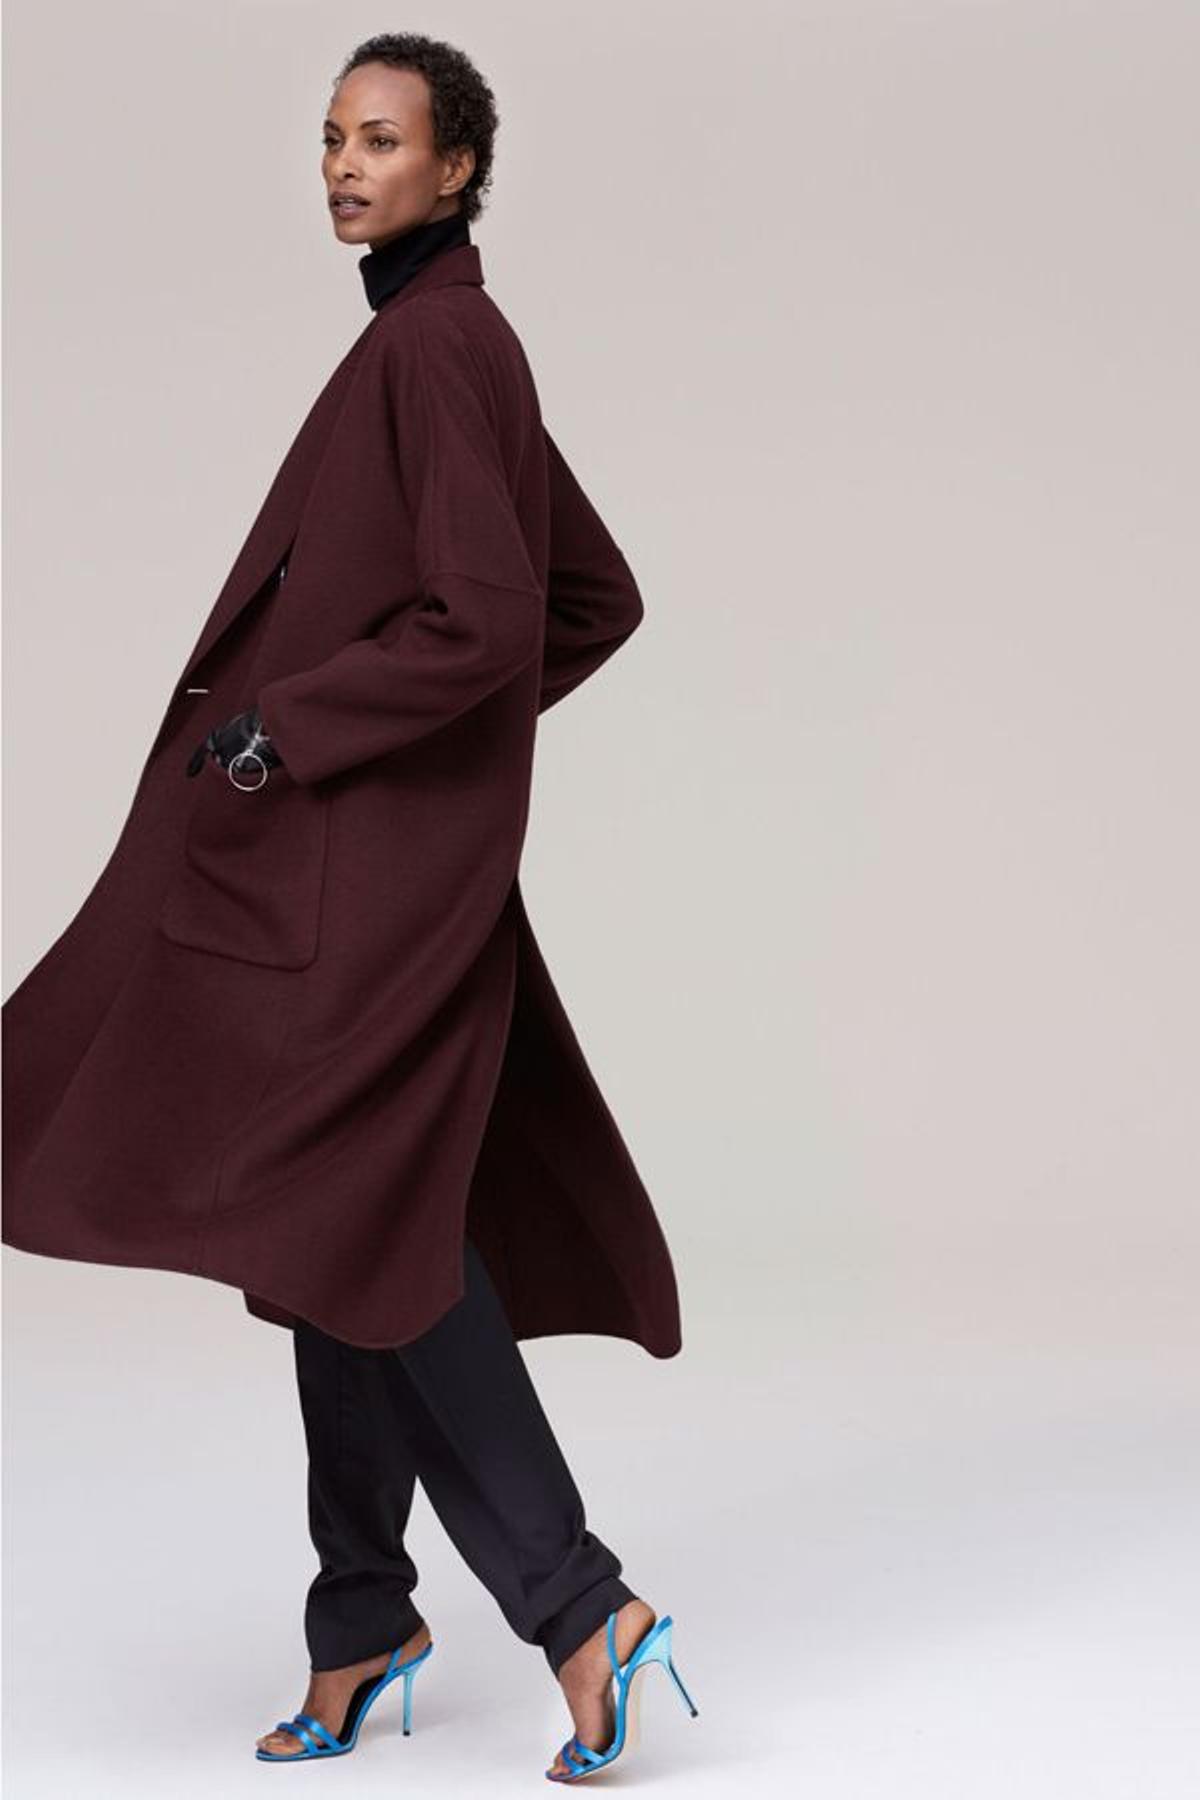 Campaña timeless de Zara: modelo con abrigo 'oversize'